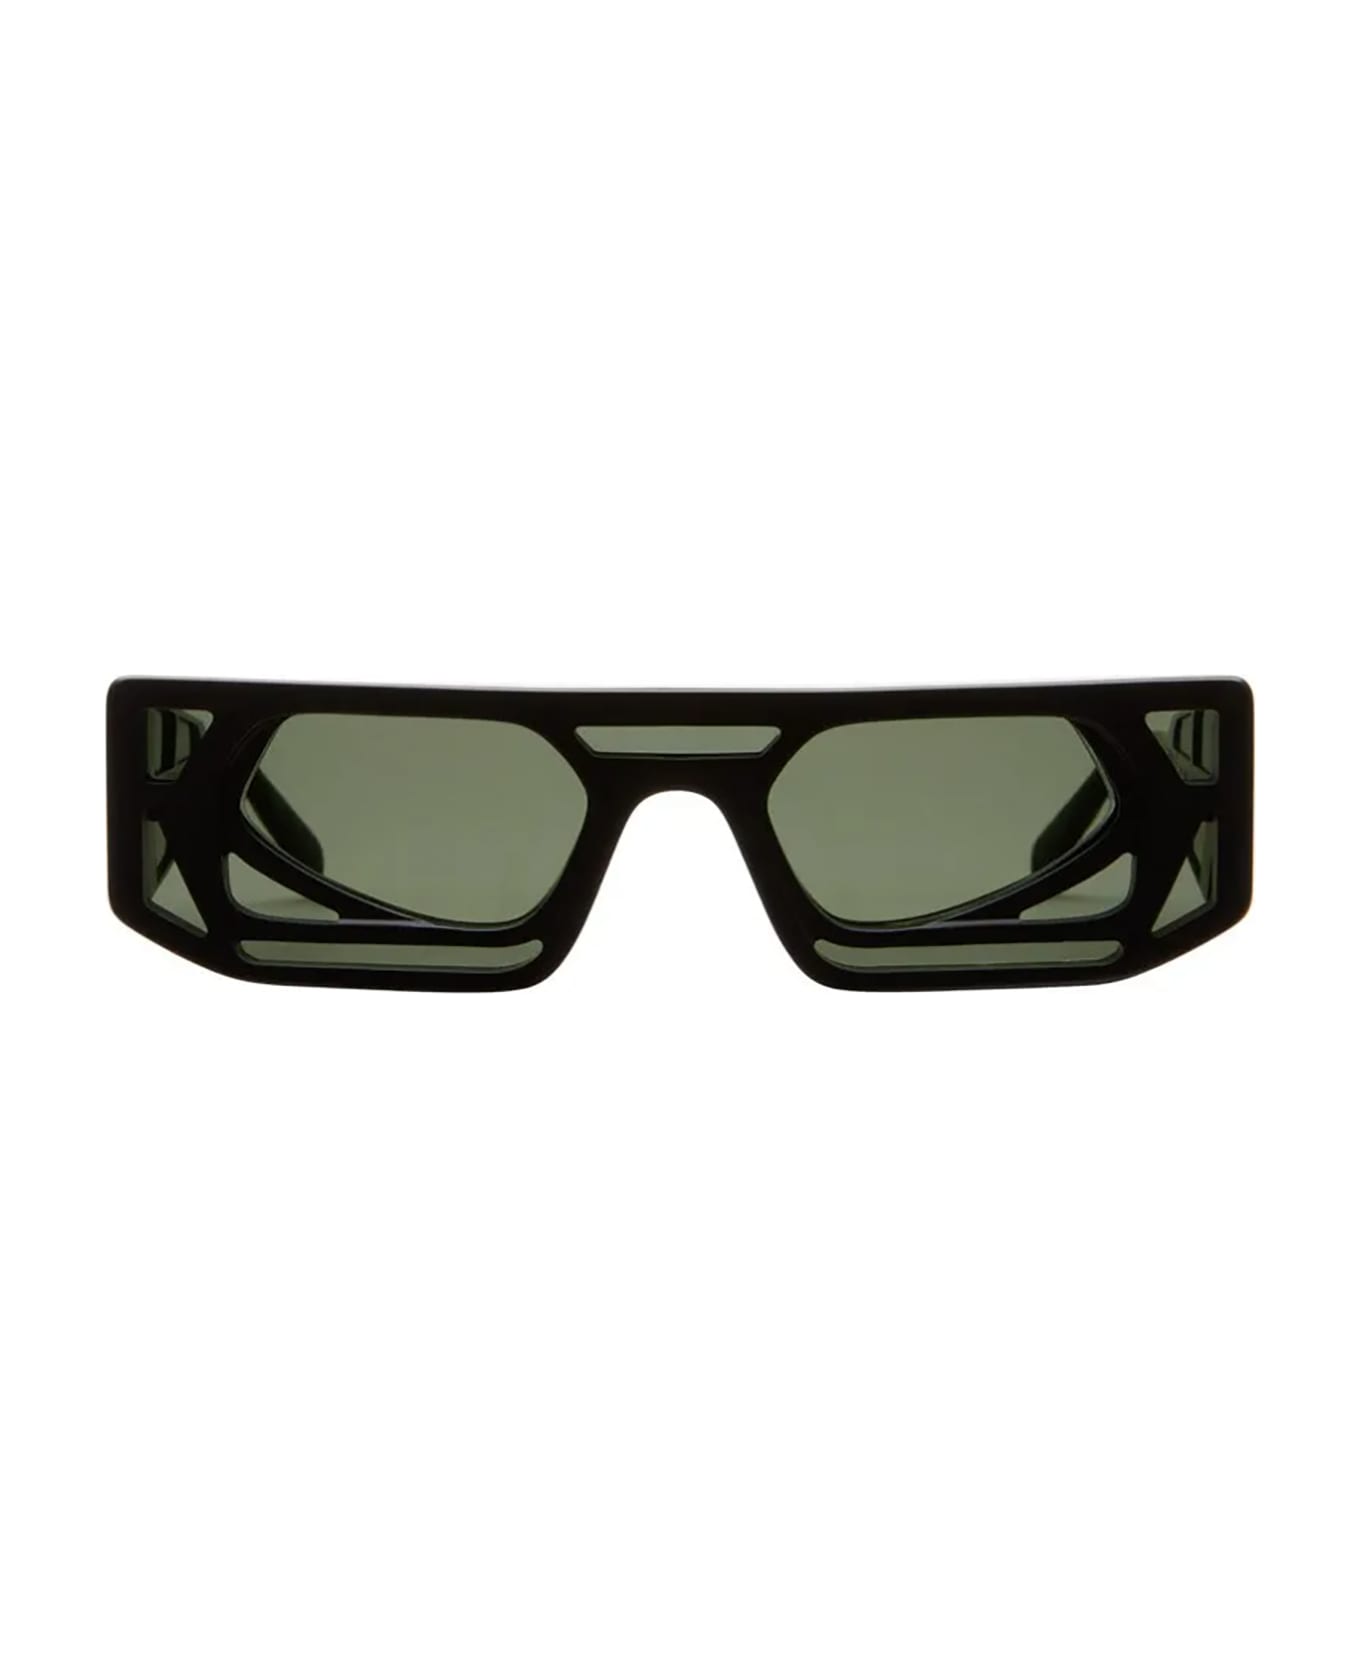 Kuboraum T9 Sunglasses EMPORIO - Bm